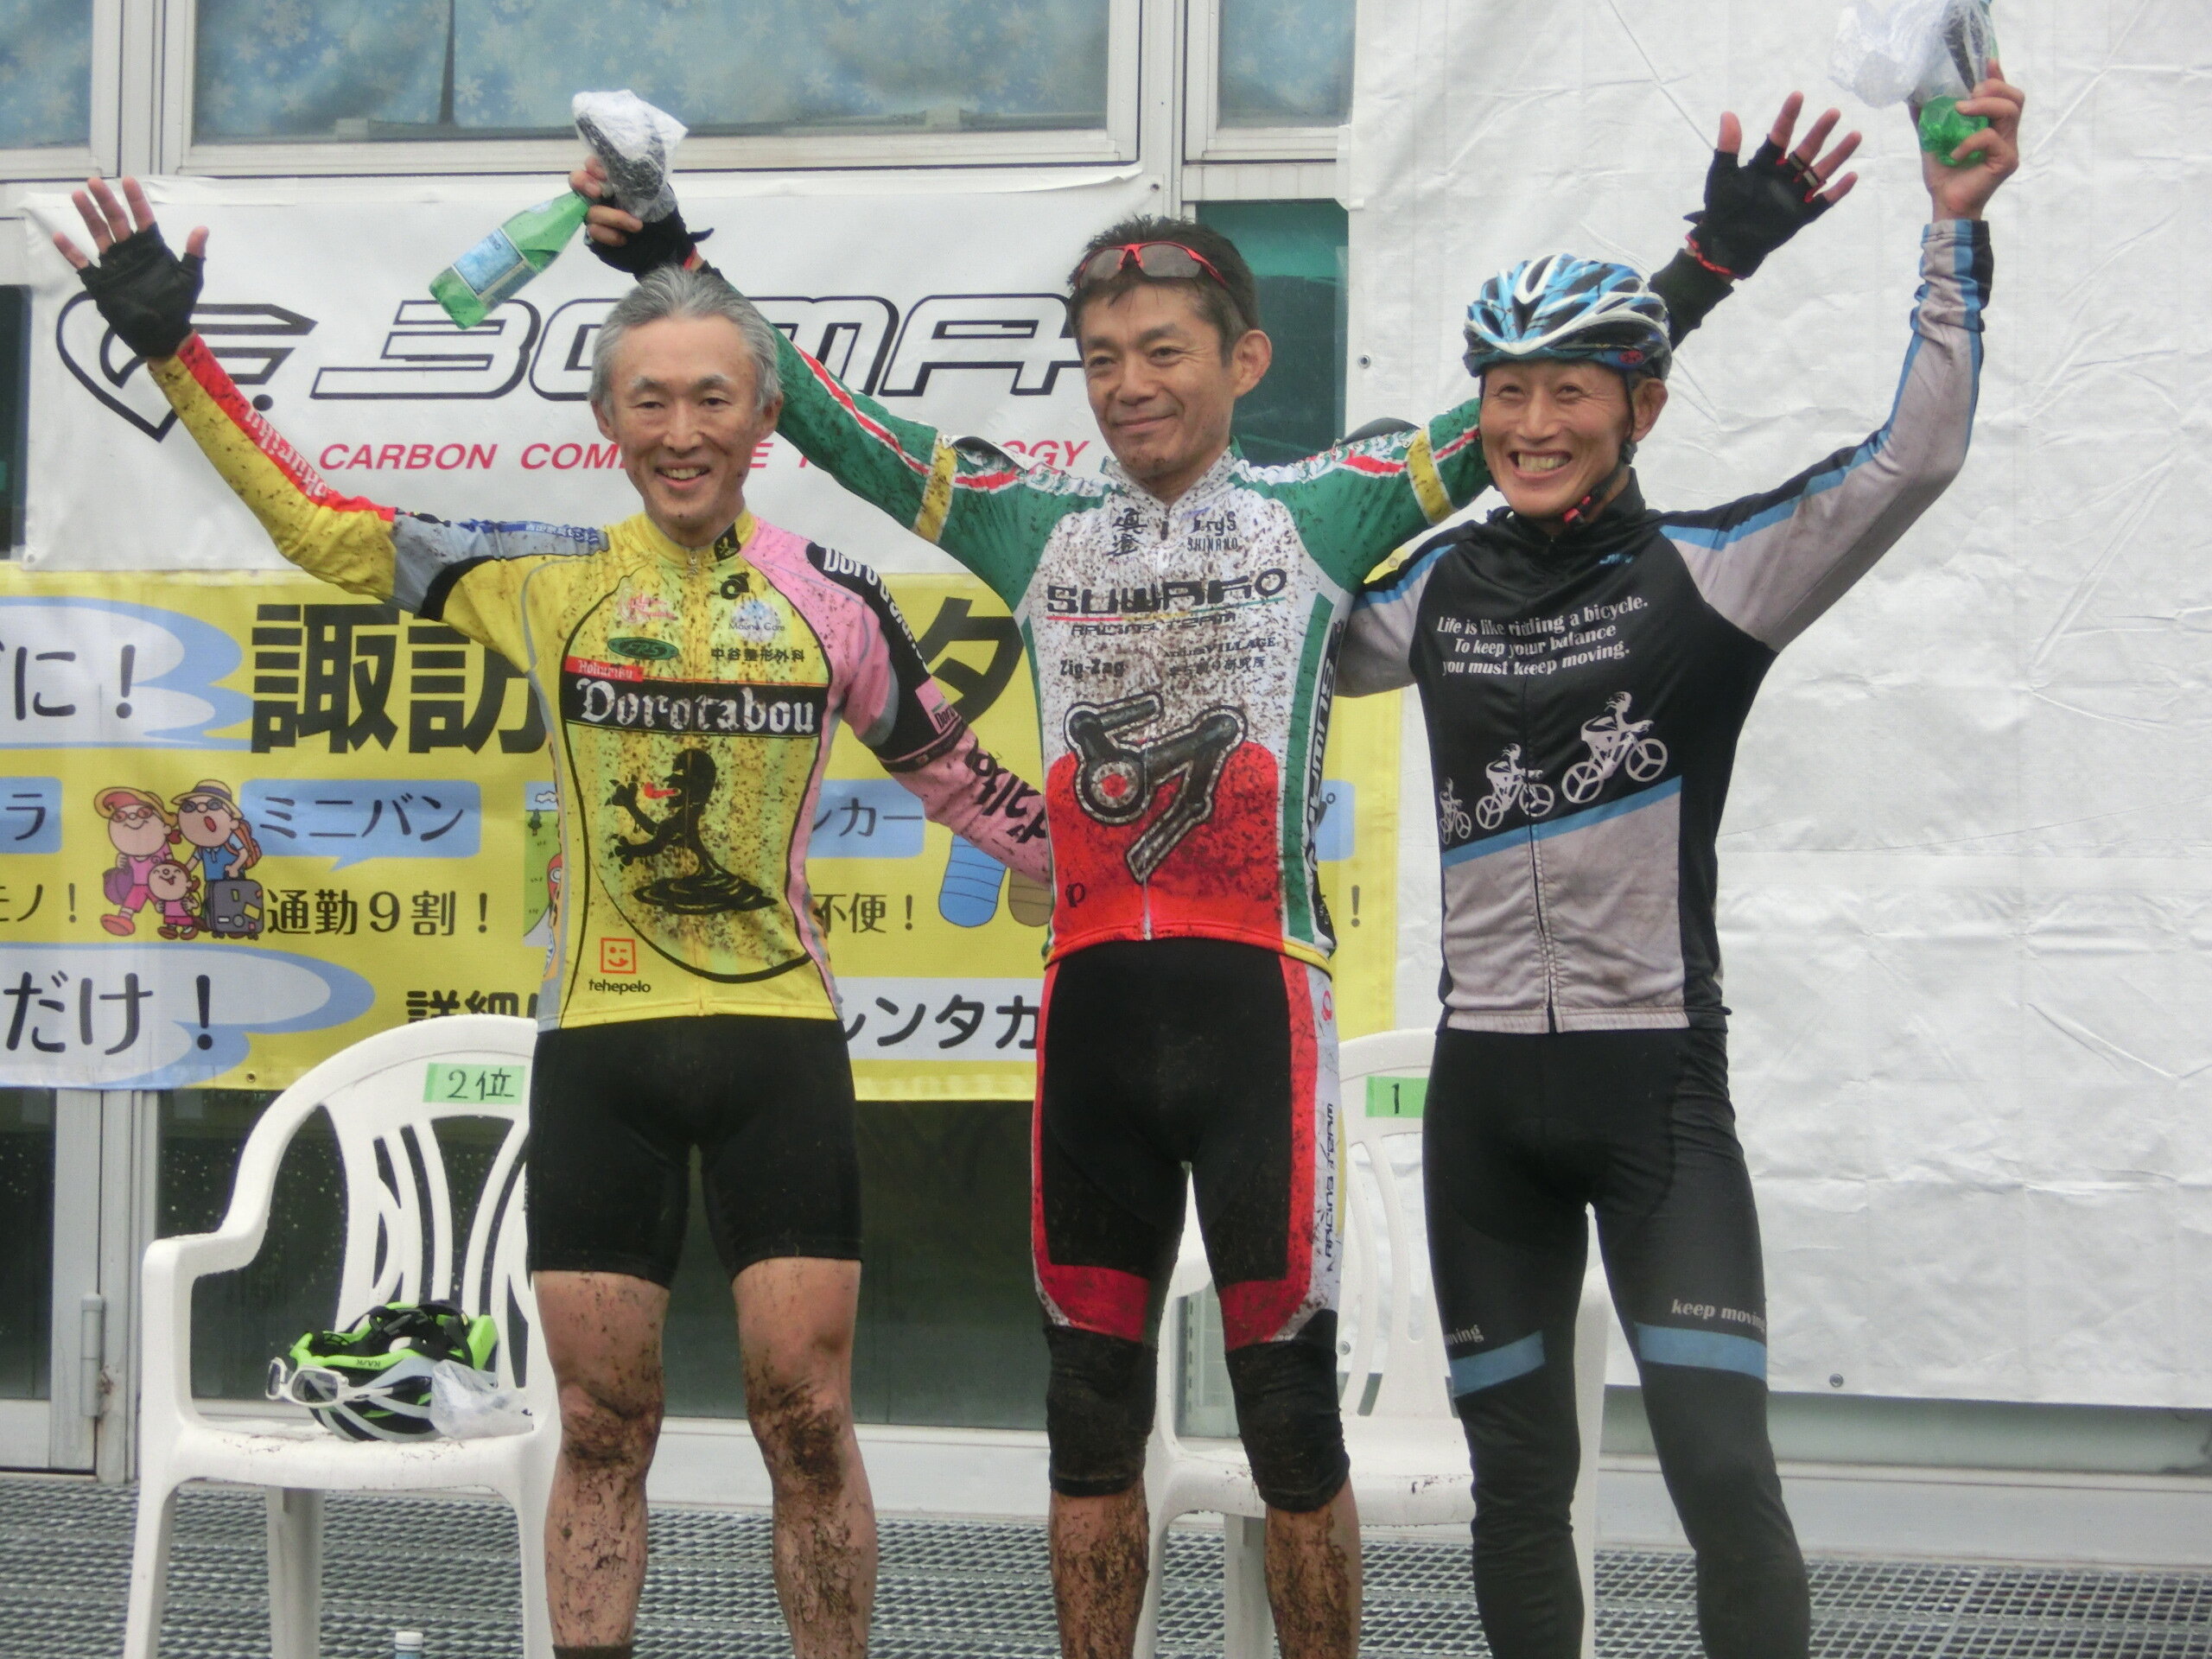 https://www.cyclocross.jp/news/13d4e635182b1150047b146e7f43490f4c31173d.JPG